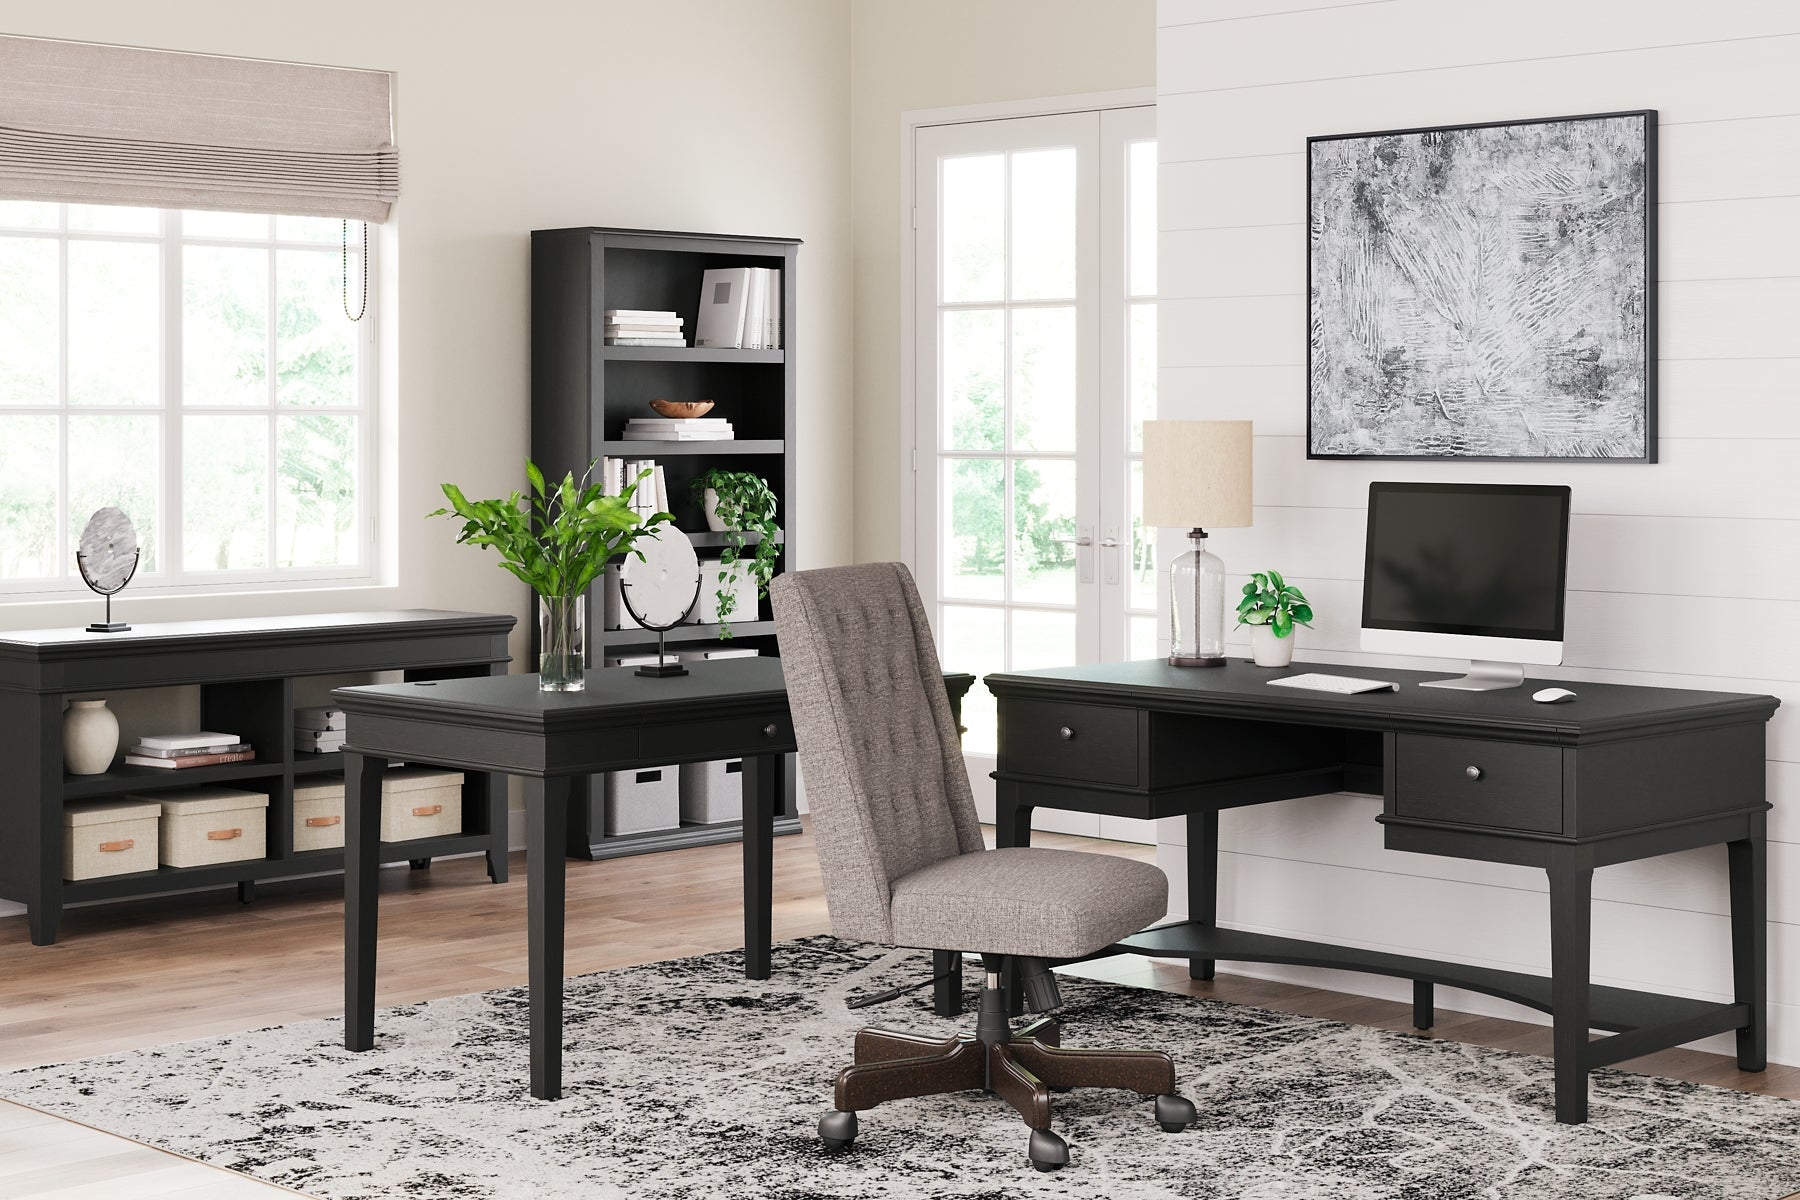 Beckincreek Home Office Small Leg Desk Smyrna Furniture Outlet